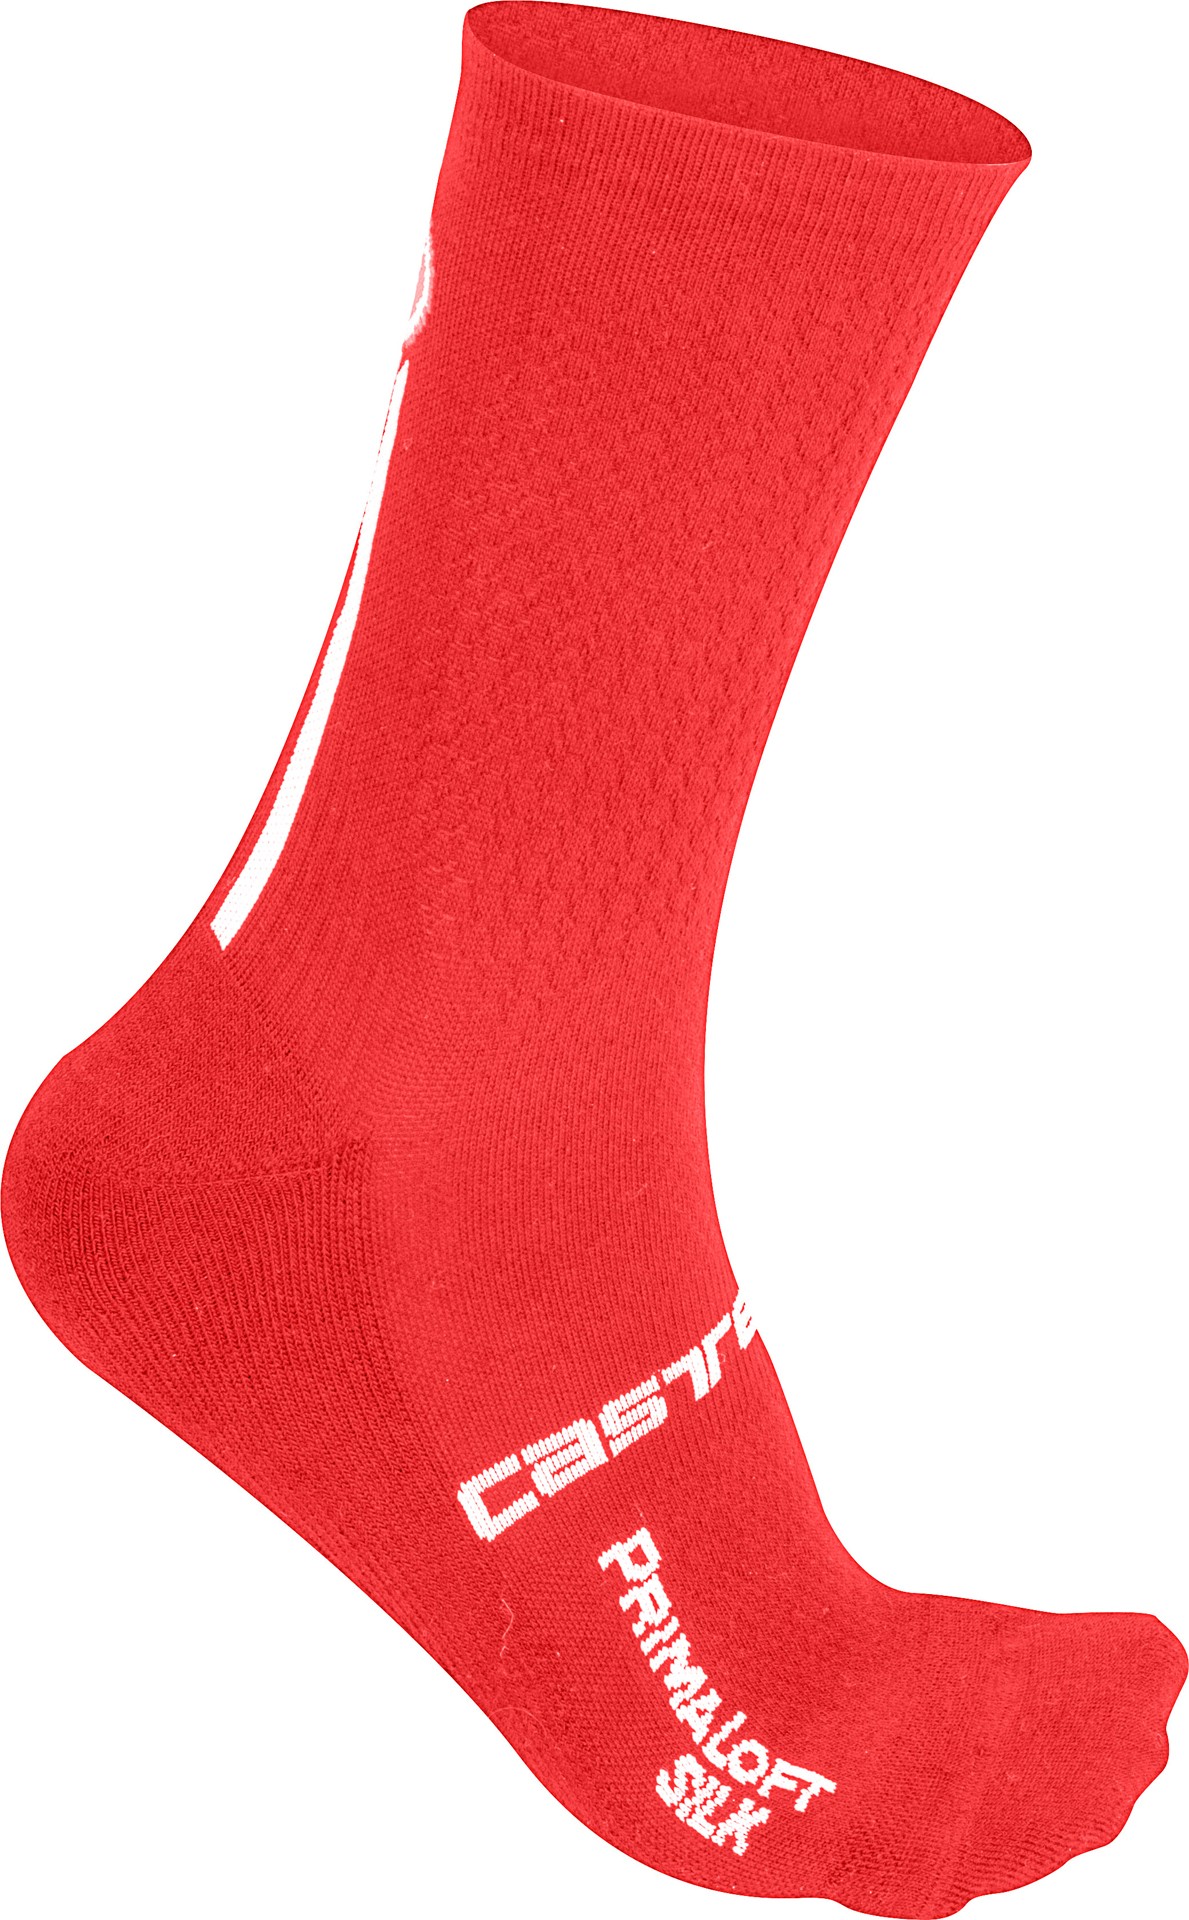 Castelli primaloft 13 chaussettes de cyclisme rouge